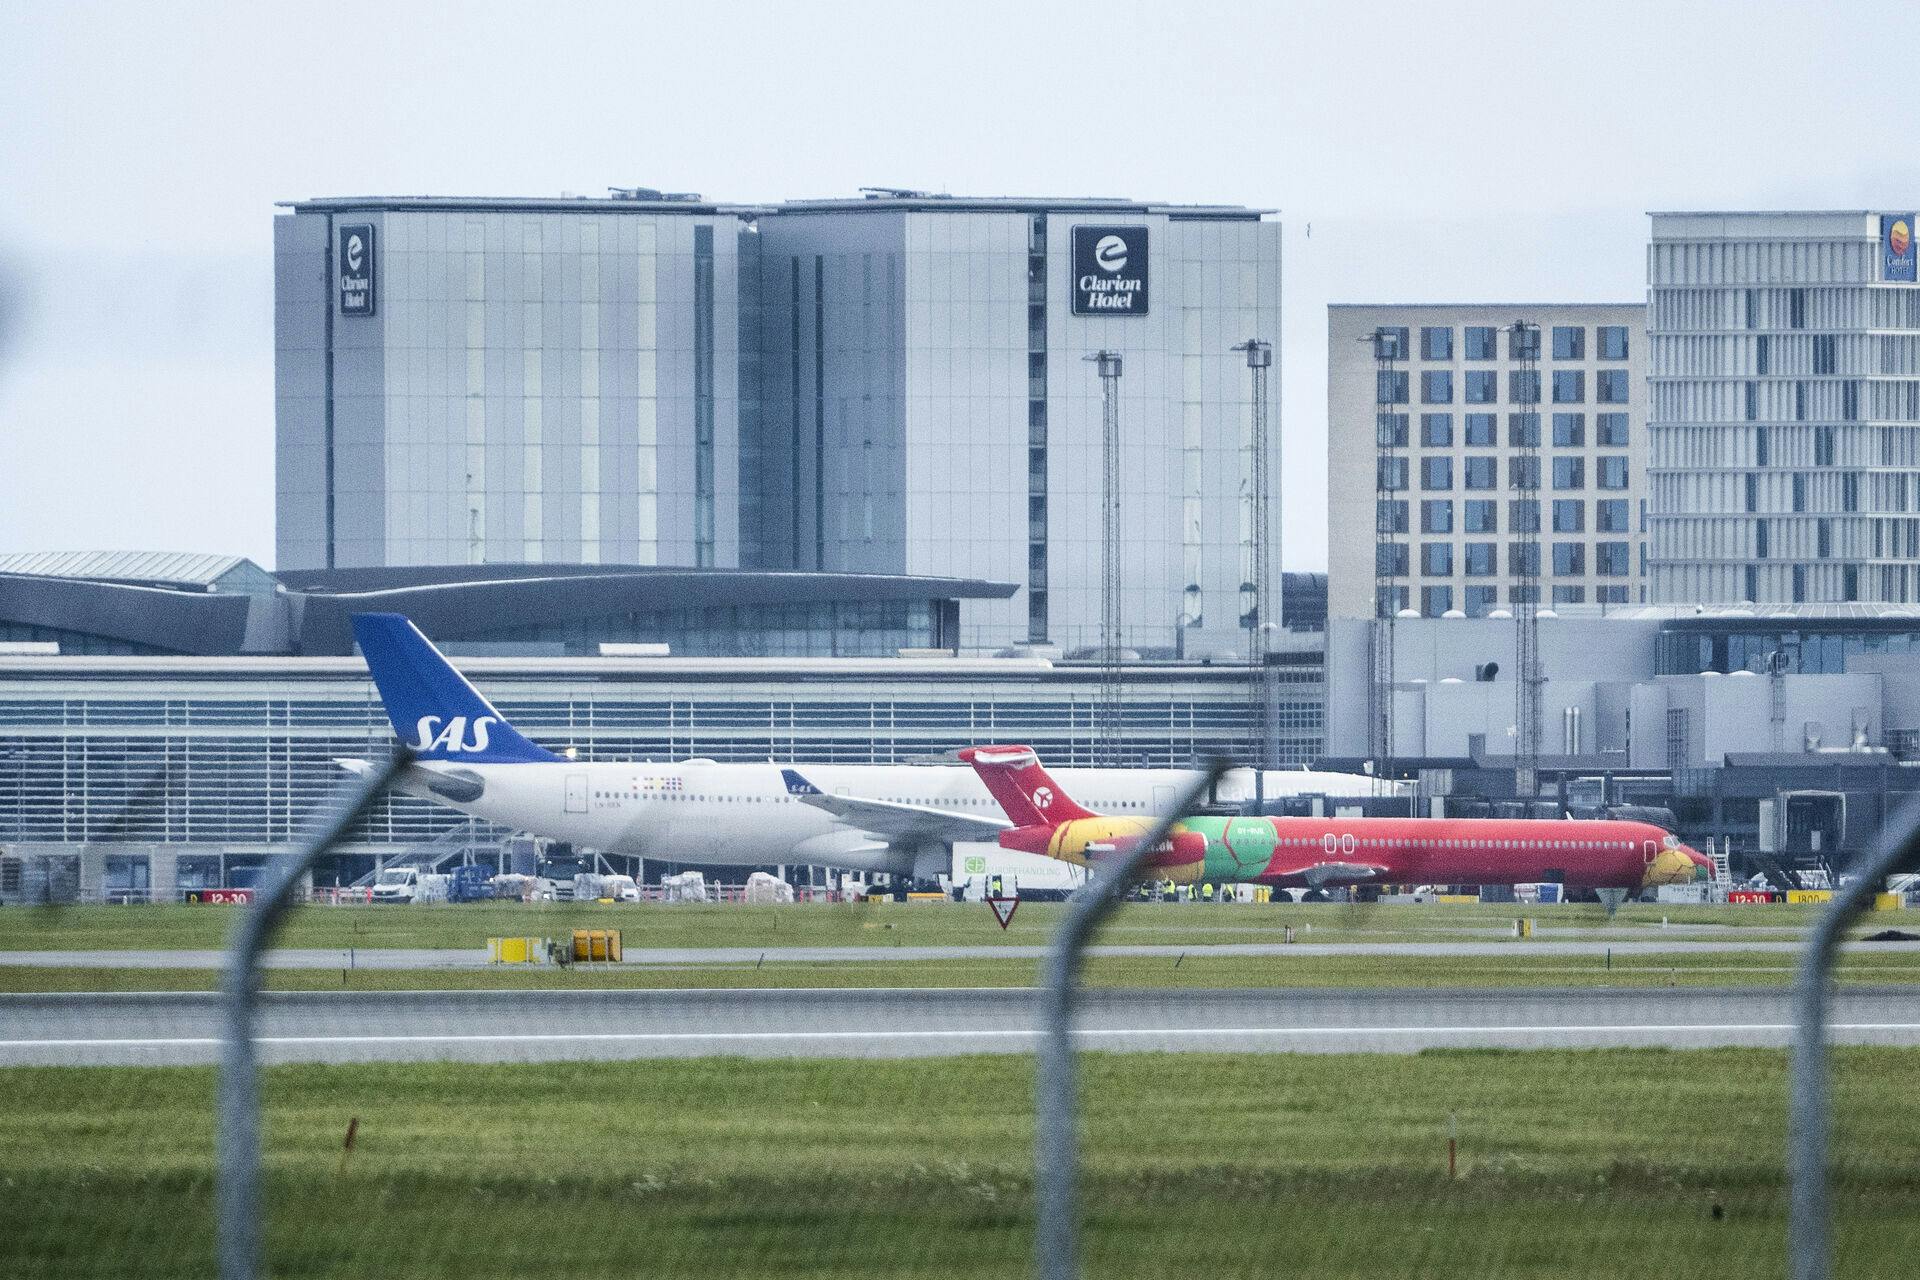 Danish Air Transports direktør, Jesper Rungholm, vender 180 grader. Nu fortæller han, at han ingen overvejelser har om at lukke flyruten mellem Rønne og København.